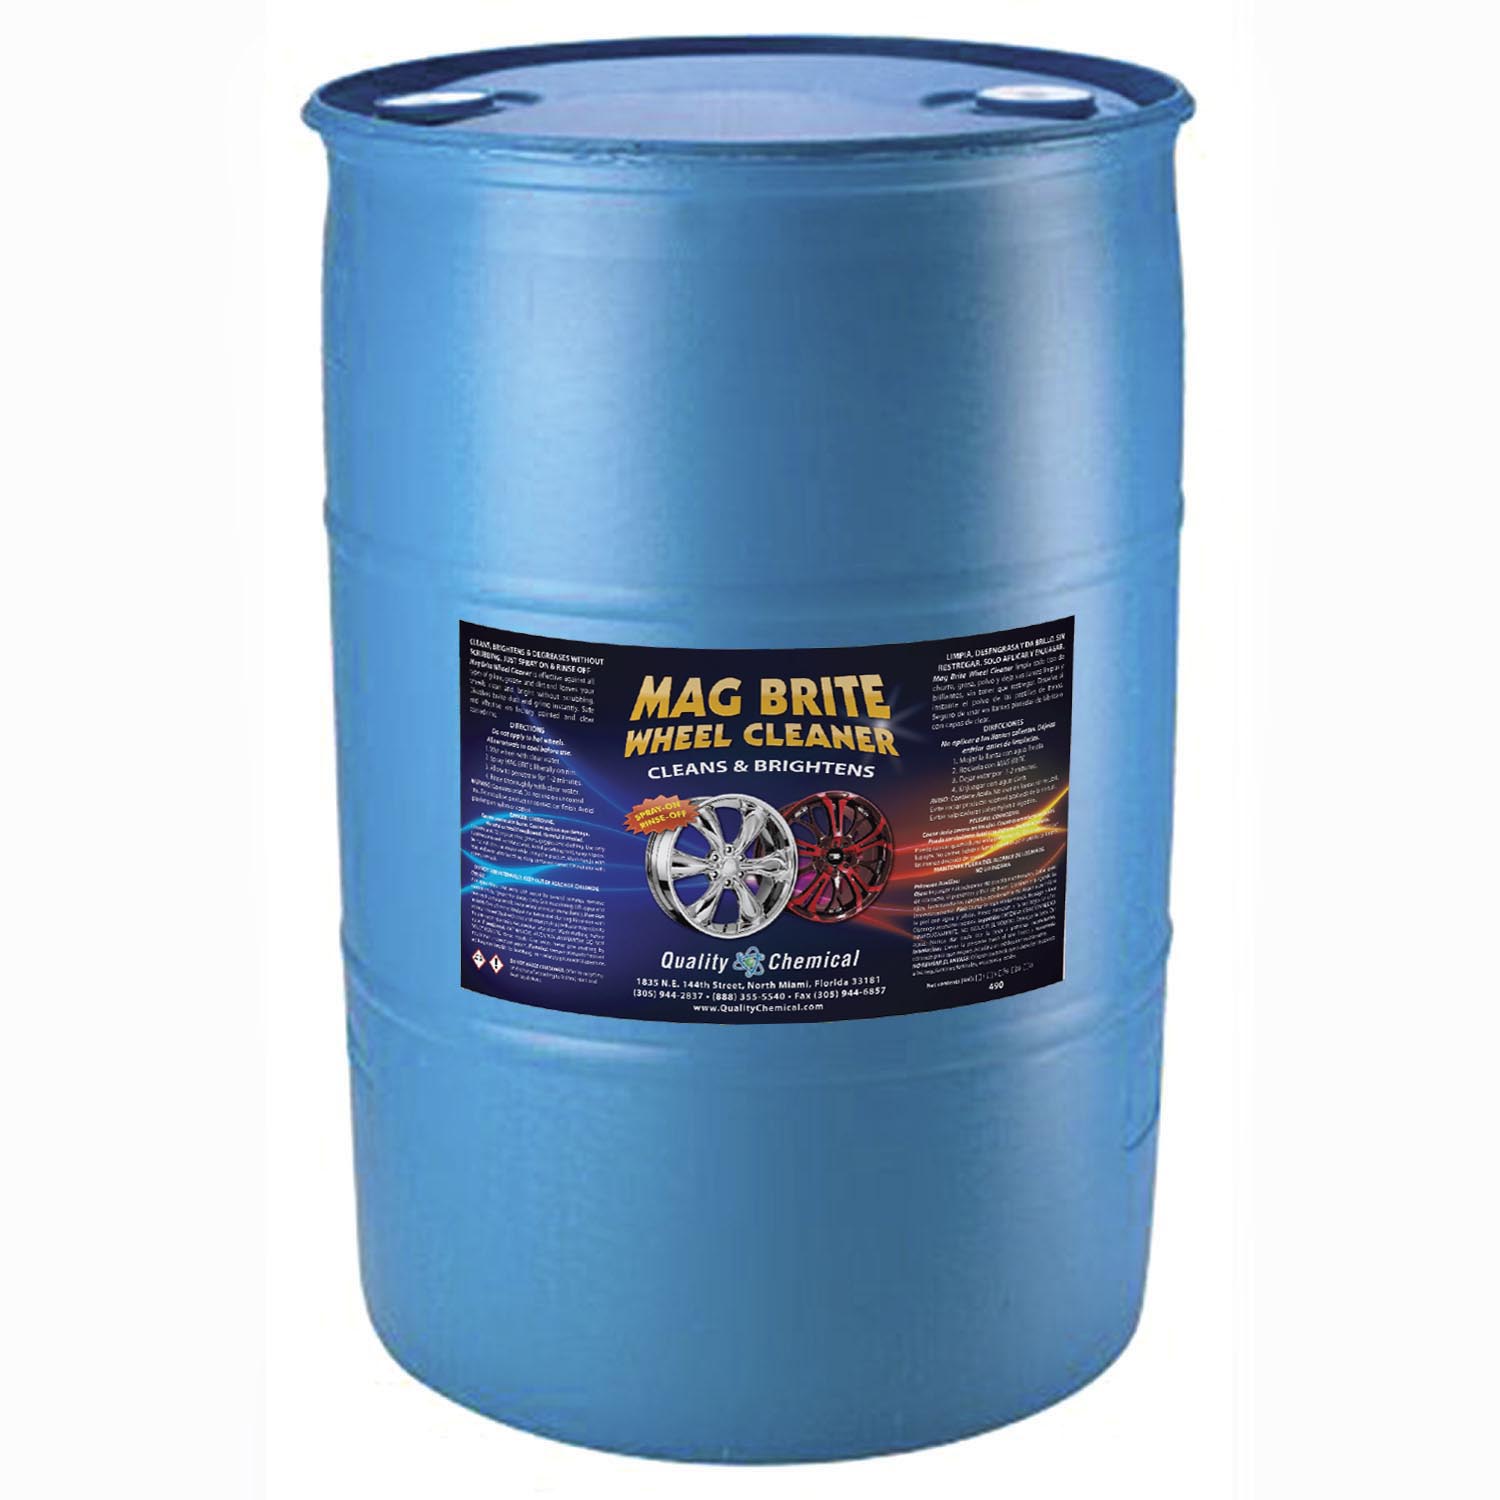 Quality Chemical Mag Brite/Limpiador ácido de llantas y llantas/limpiador  de ruedas y neumáticos, formulado para eliminar de forma segura el polvo de